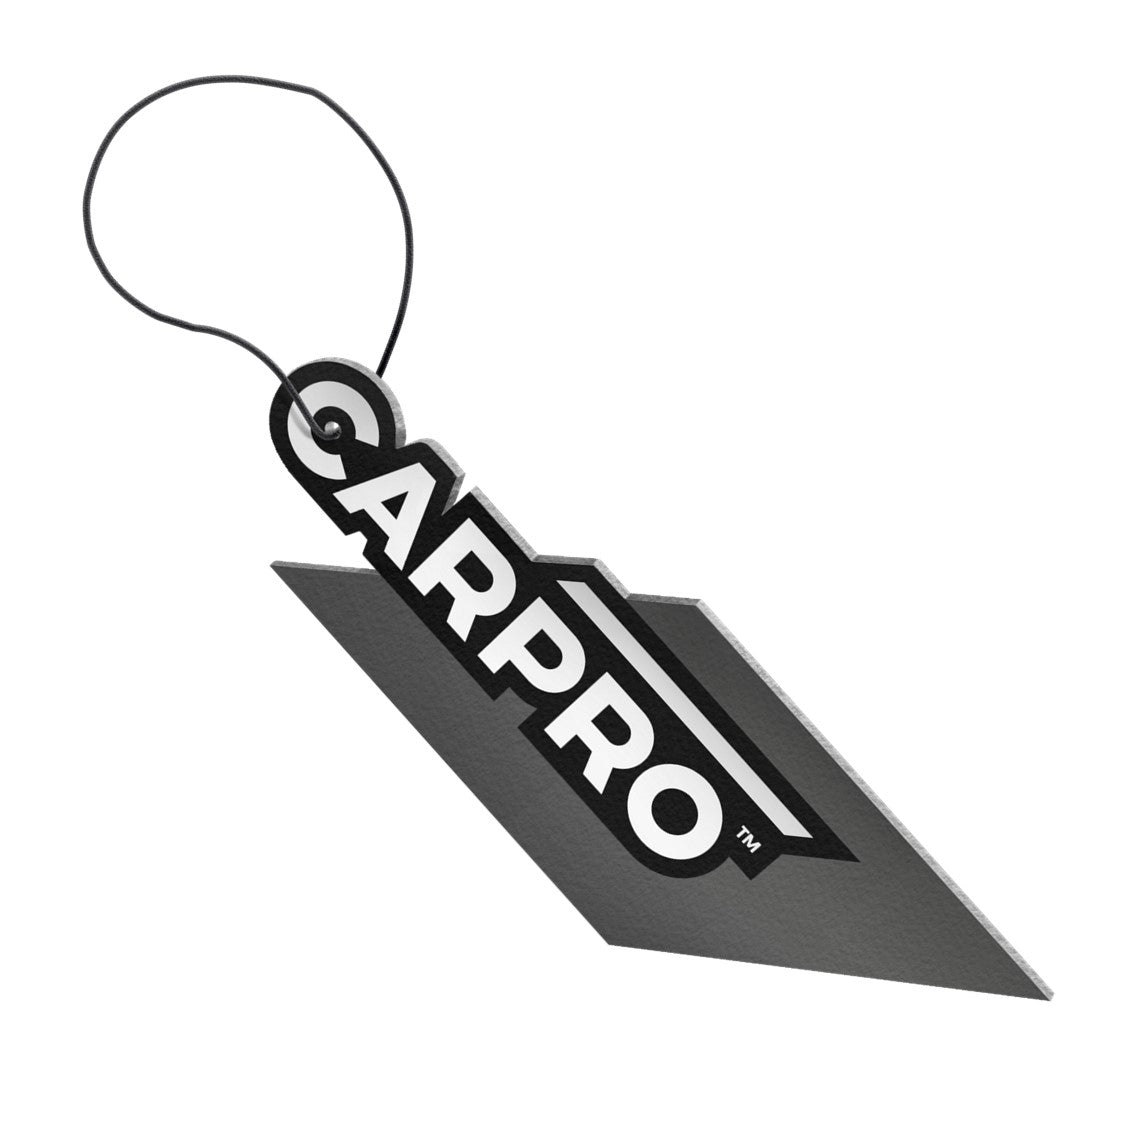 CARPRO Air freshner - Squash